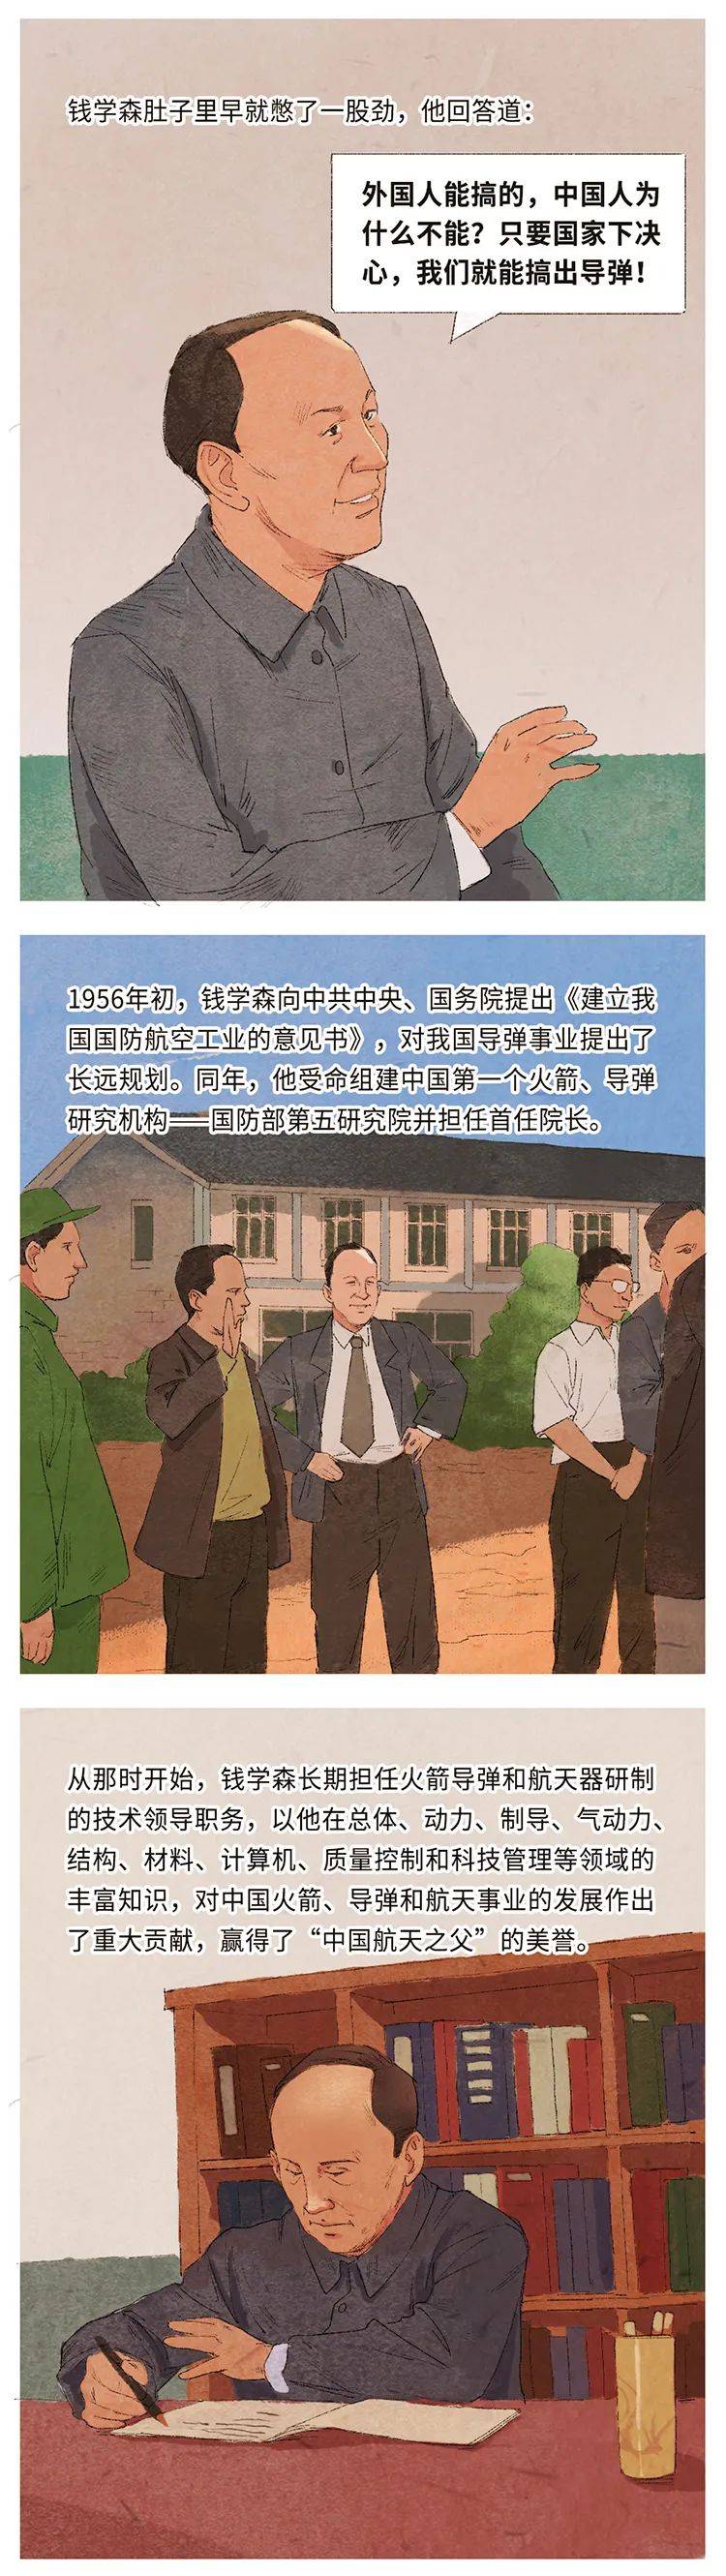 漫画最美奋斗者中国航天之父钱学森人民的满意是最高的奖赏